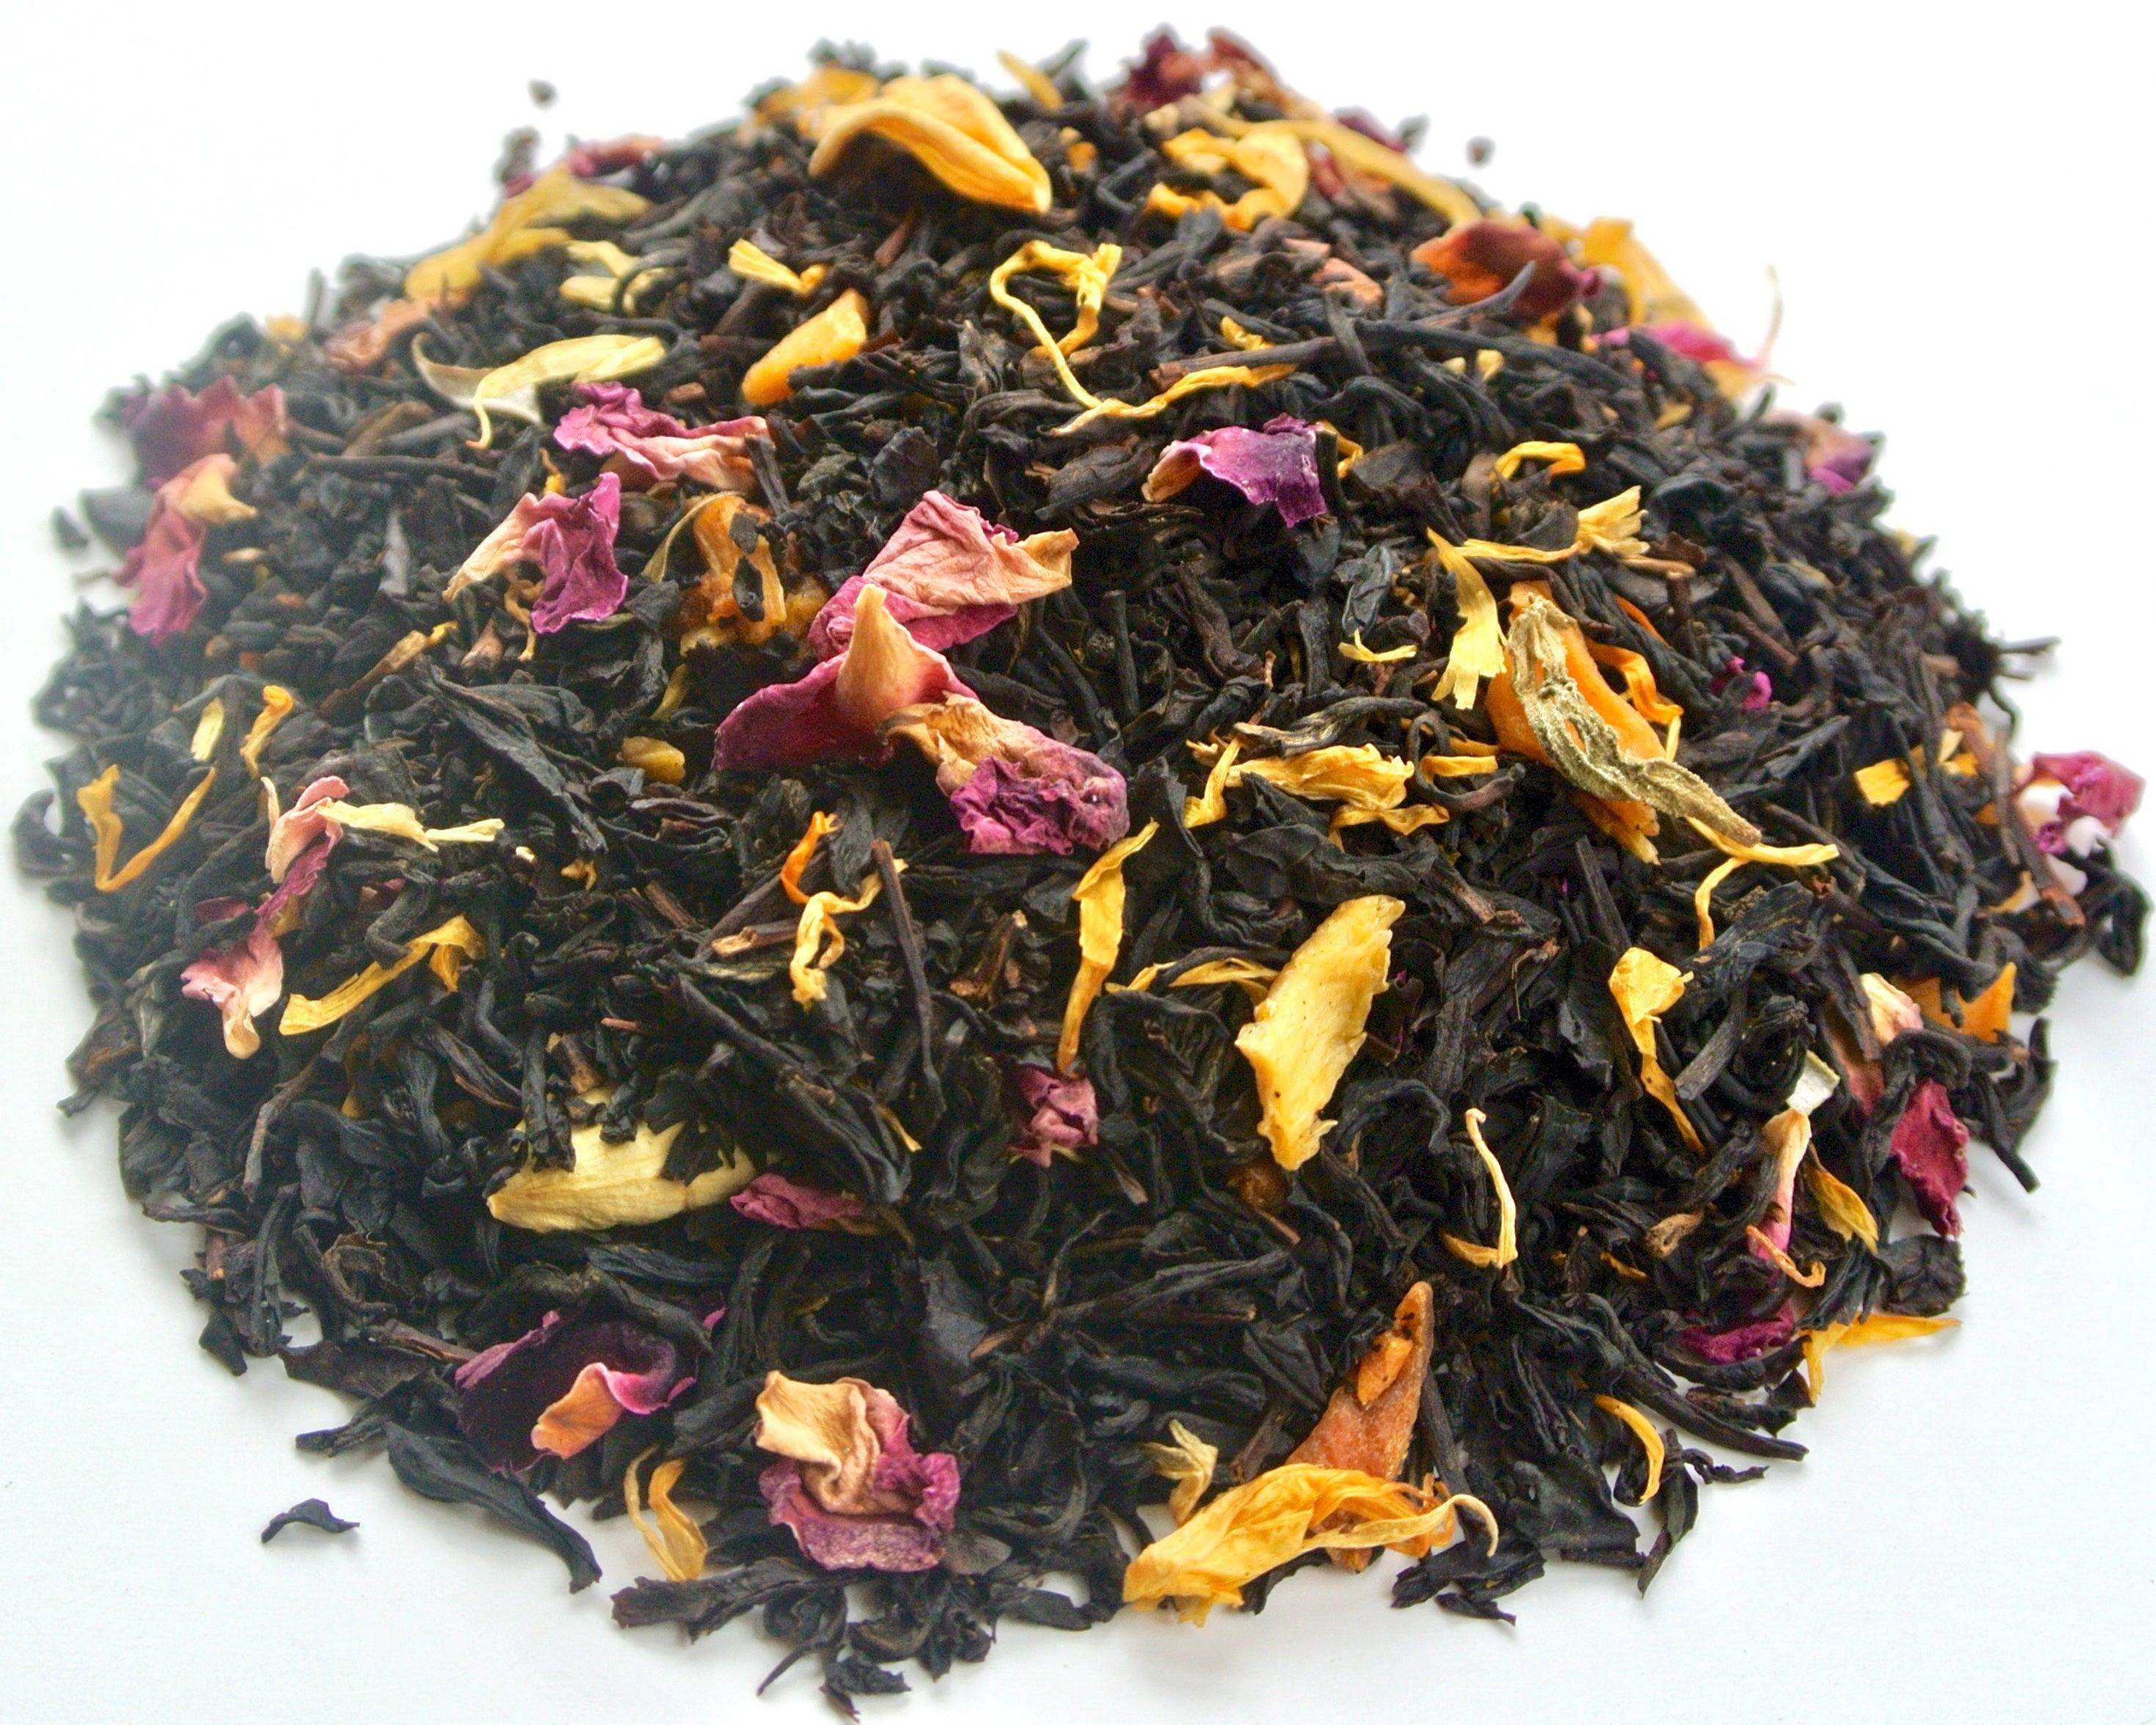 Hand Blended Loose Leaf Tea, Black and Herbal Blends, 2 oz. - VirtuousWares:Global